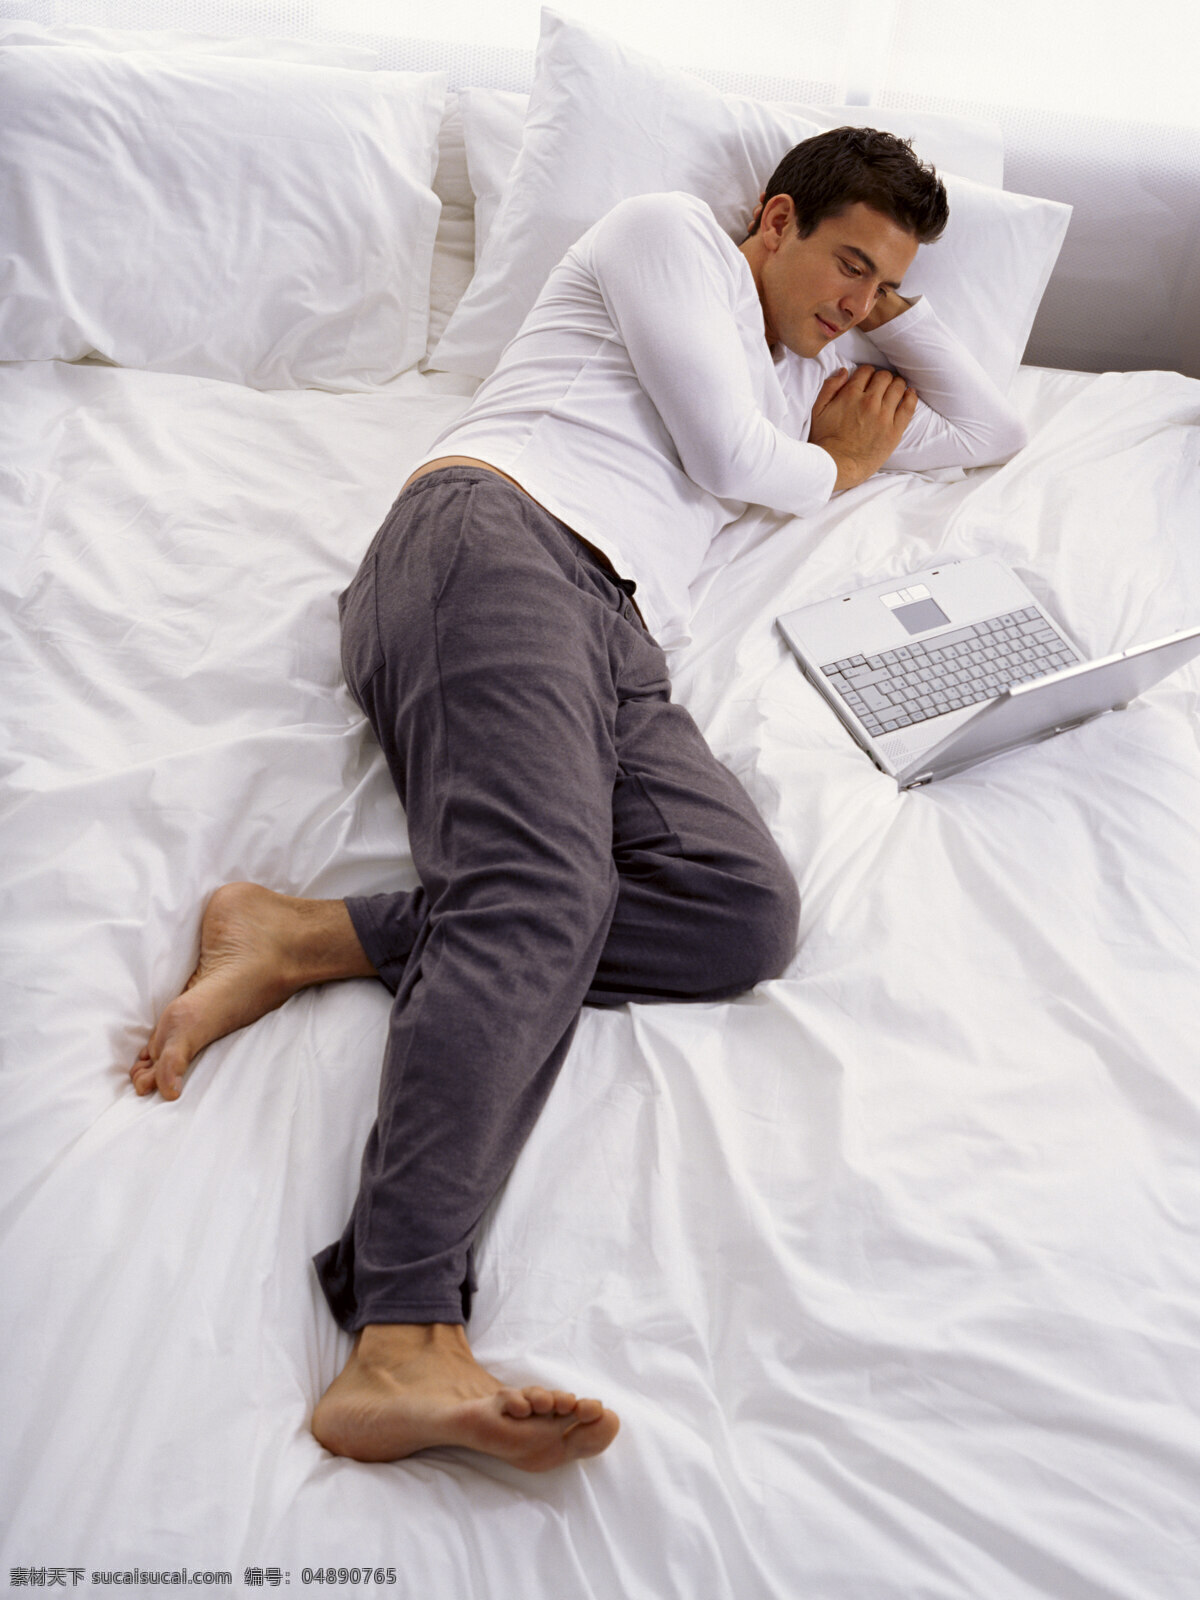 床上 看 影片 男人 外国男性 男性 外国夫妻 幸福 微笑 躺在床上 看影片 笔记本电脑 情侣图片 人物图片